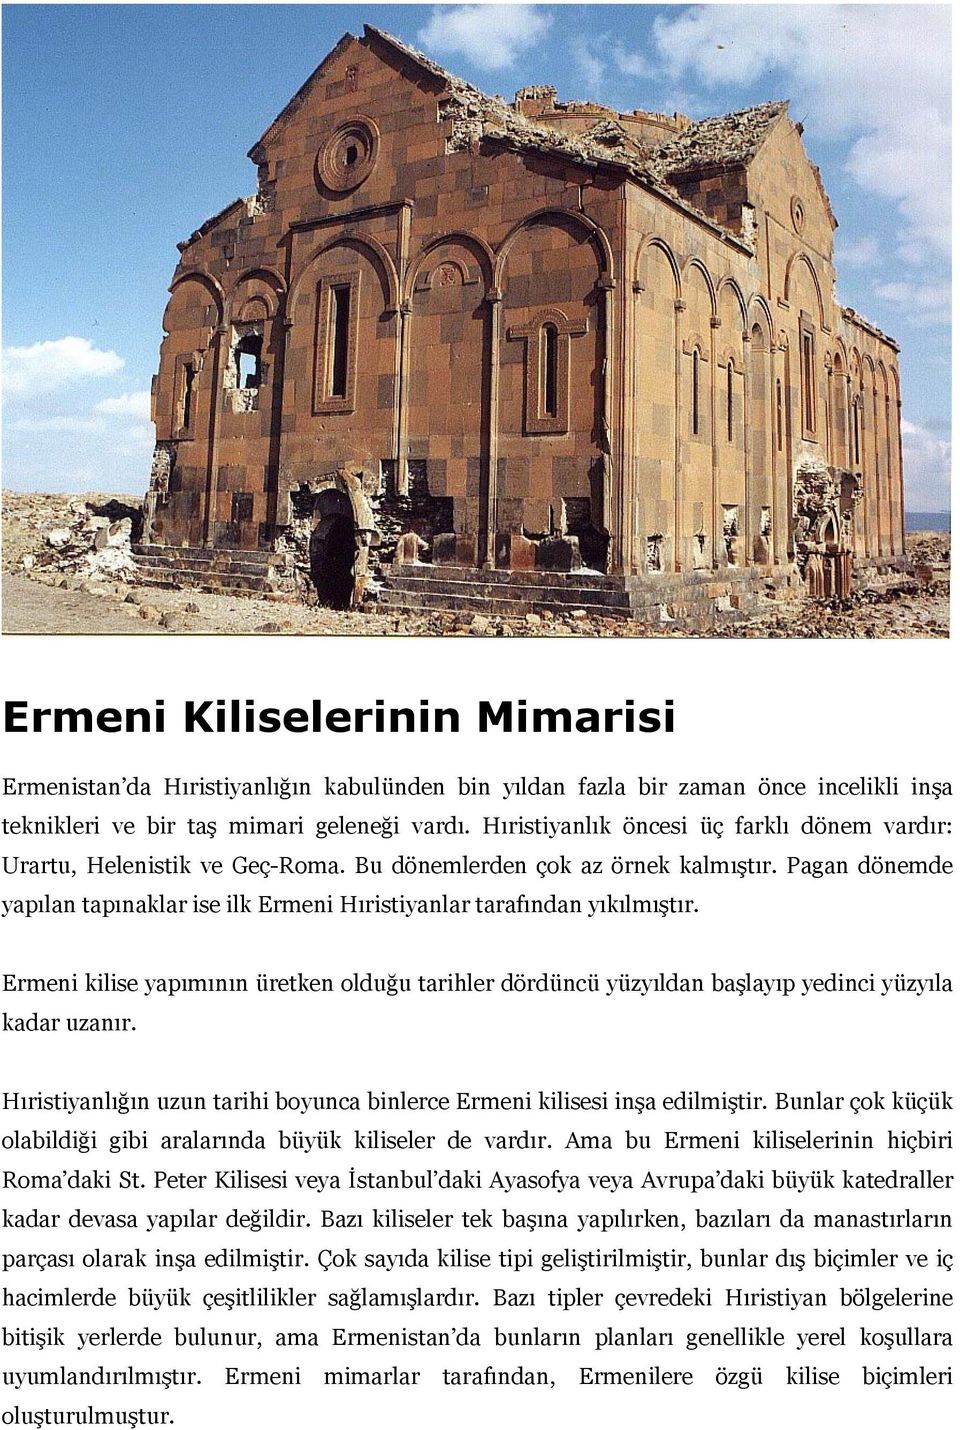 Pagan dönemde yapılan tapınaklar ise ilk Ermeni Hıristiyanlar tarafından yıkılmıştır. Ermeni kilise yapımının üretken olduğu tarihler dördüncü yüzyıldan başlayıp yedinci yüzyıla kadar uzanır.